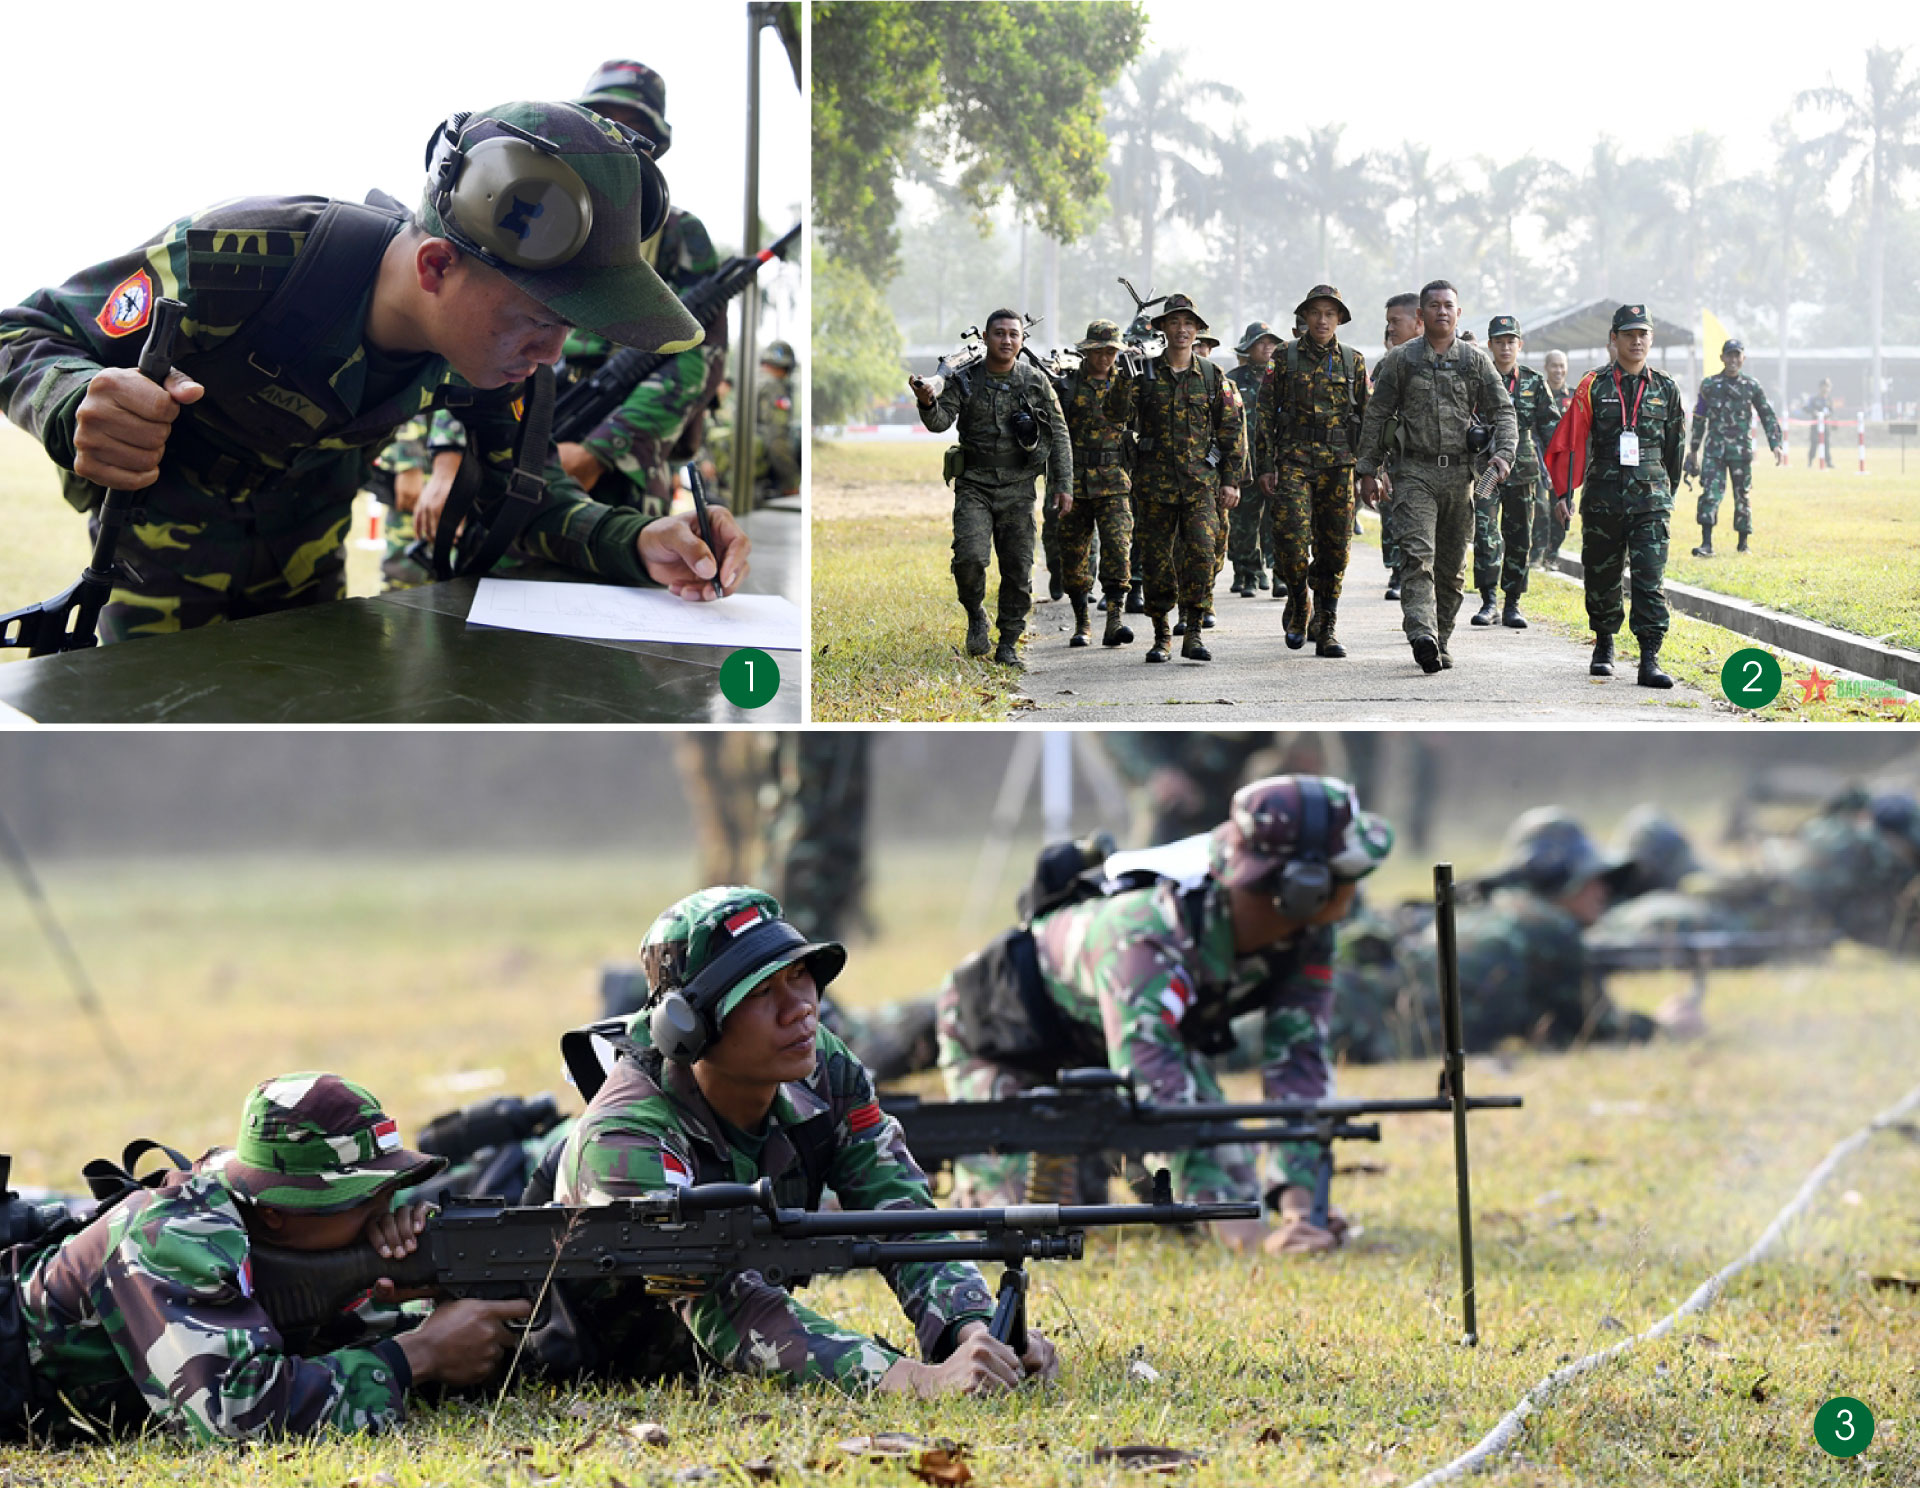 AARM-30: Các xạ thủ ASEAN thể hiện tinh thần đồng đội trên thao trường